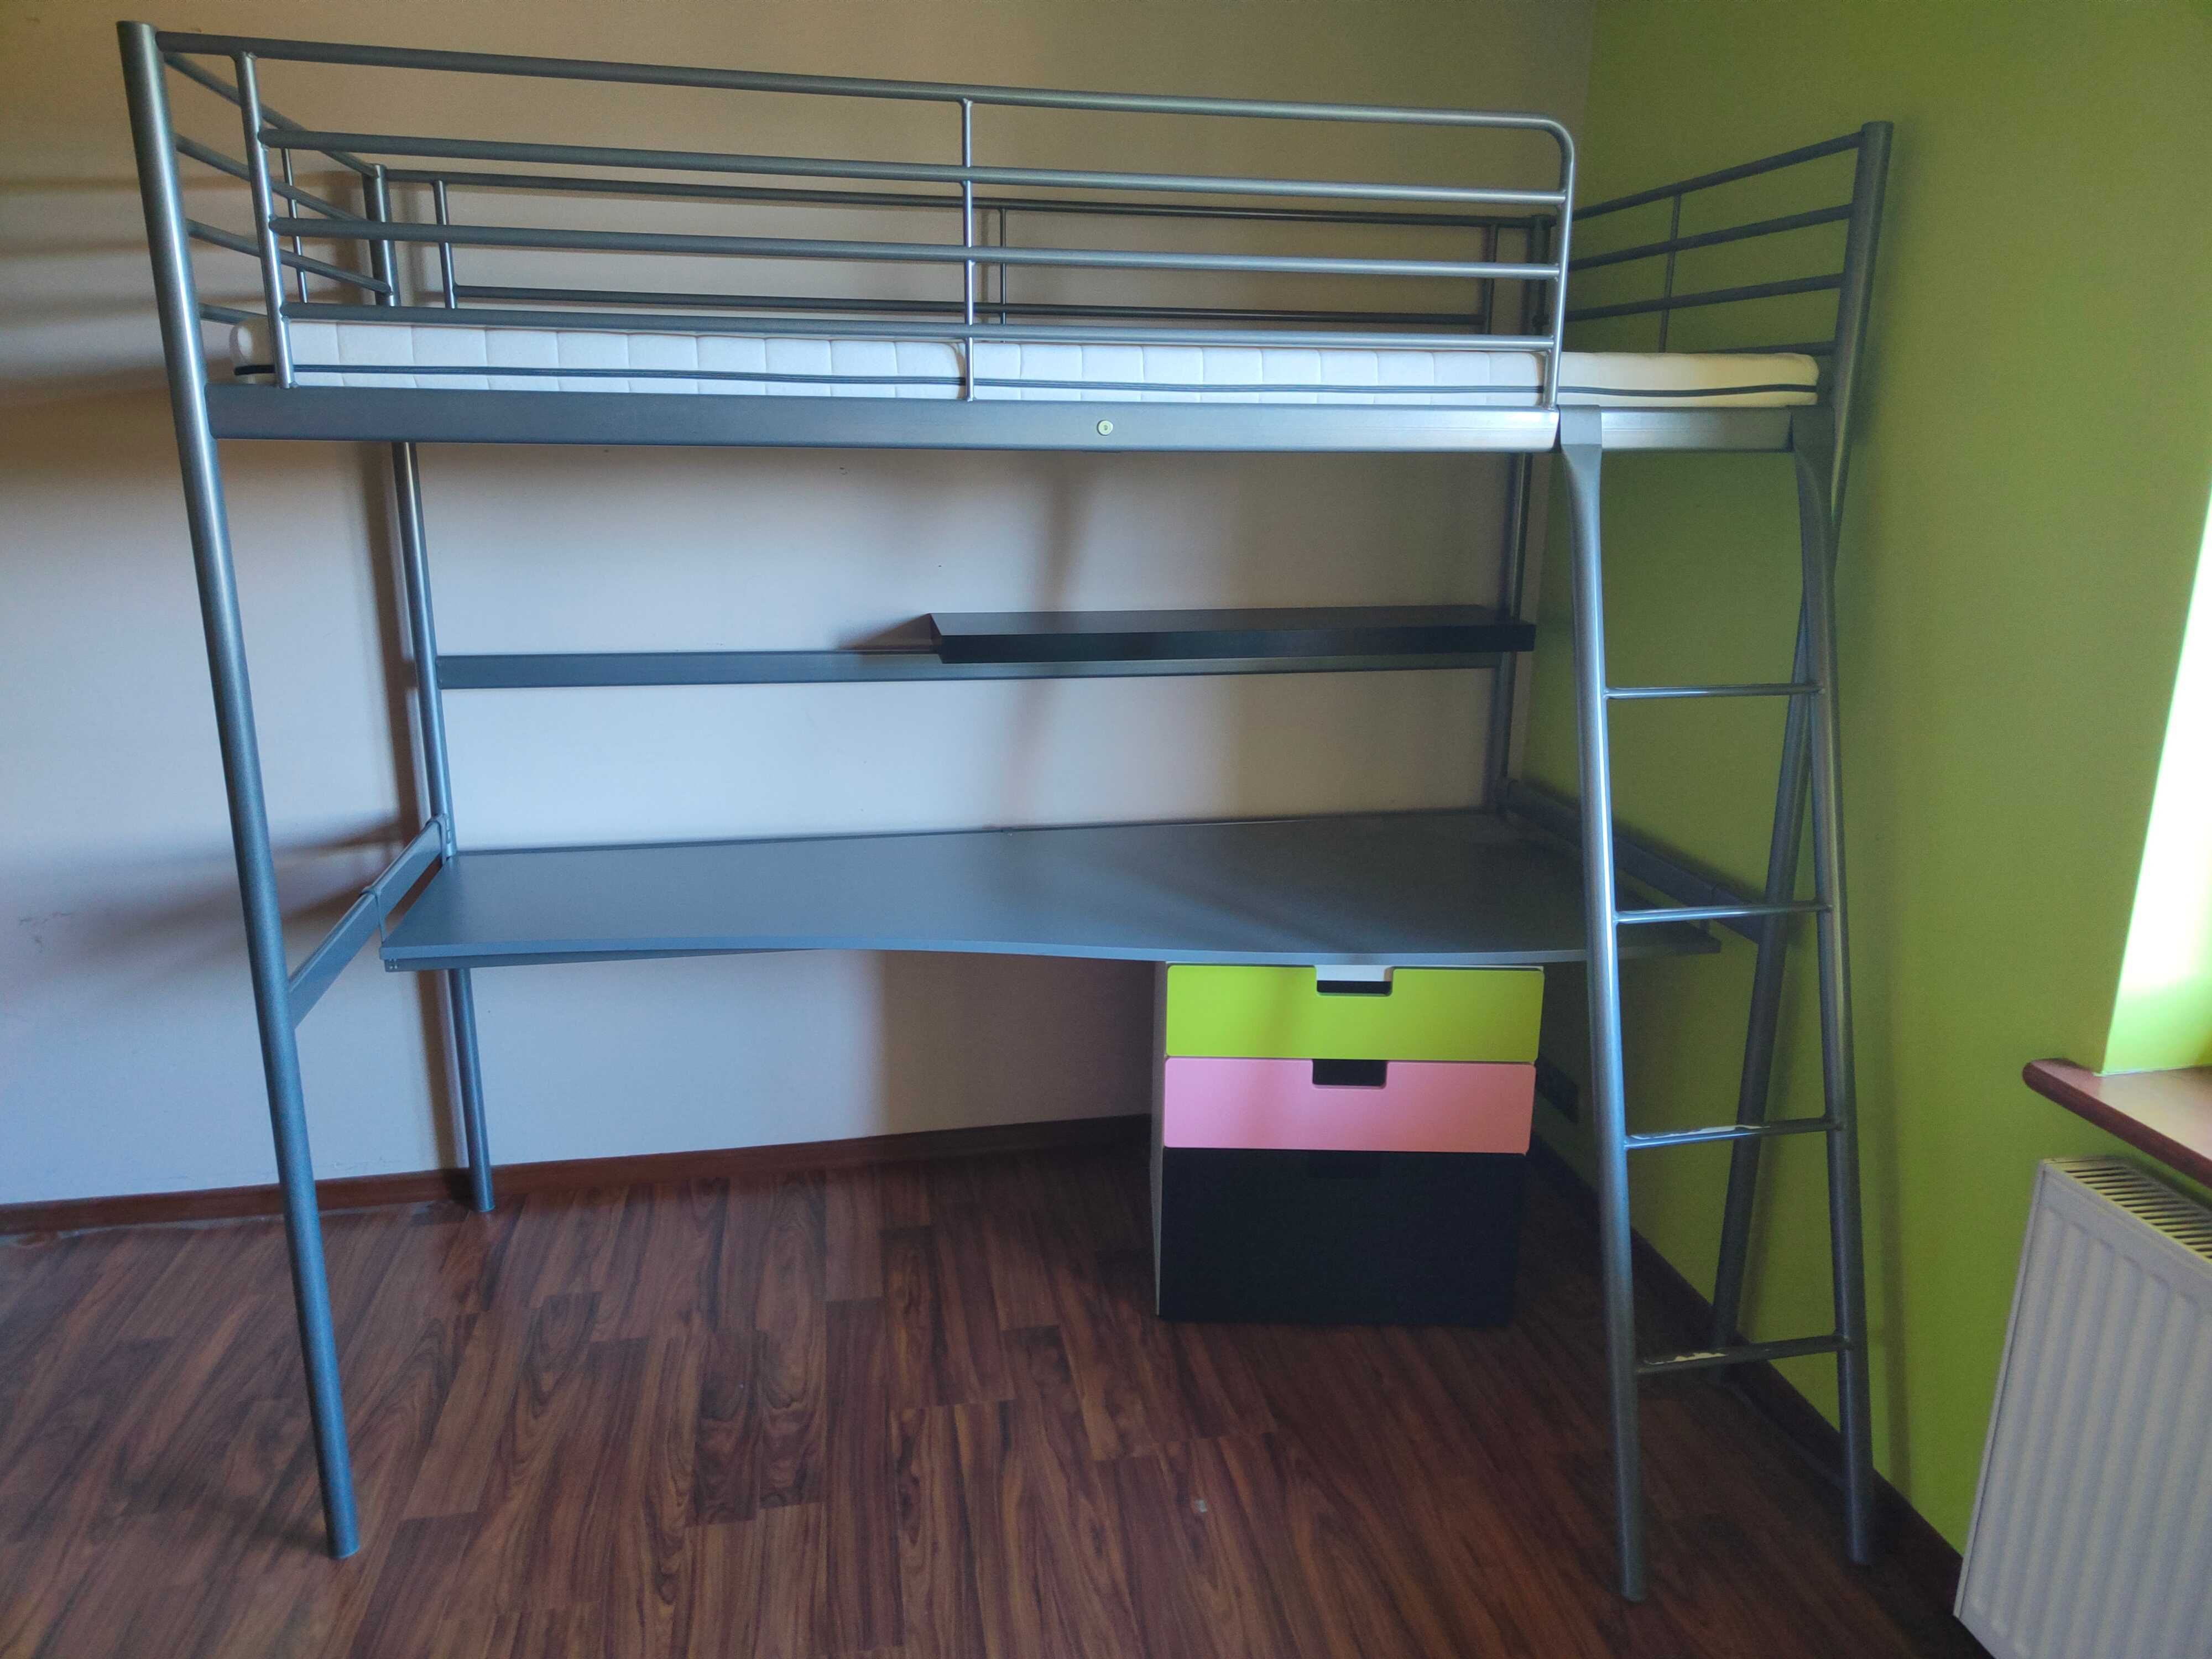 IKEA łóżko SVÄRTA plus materac, biurko i komoda, szarostalowy.